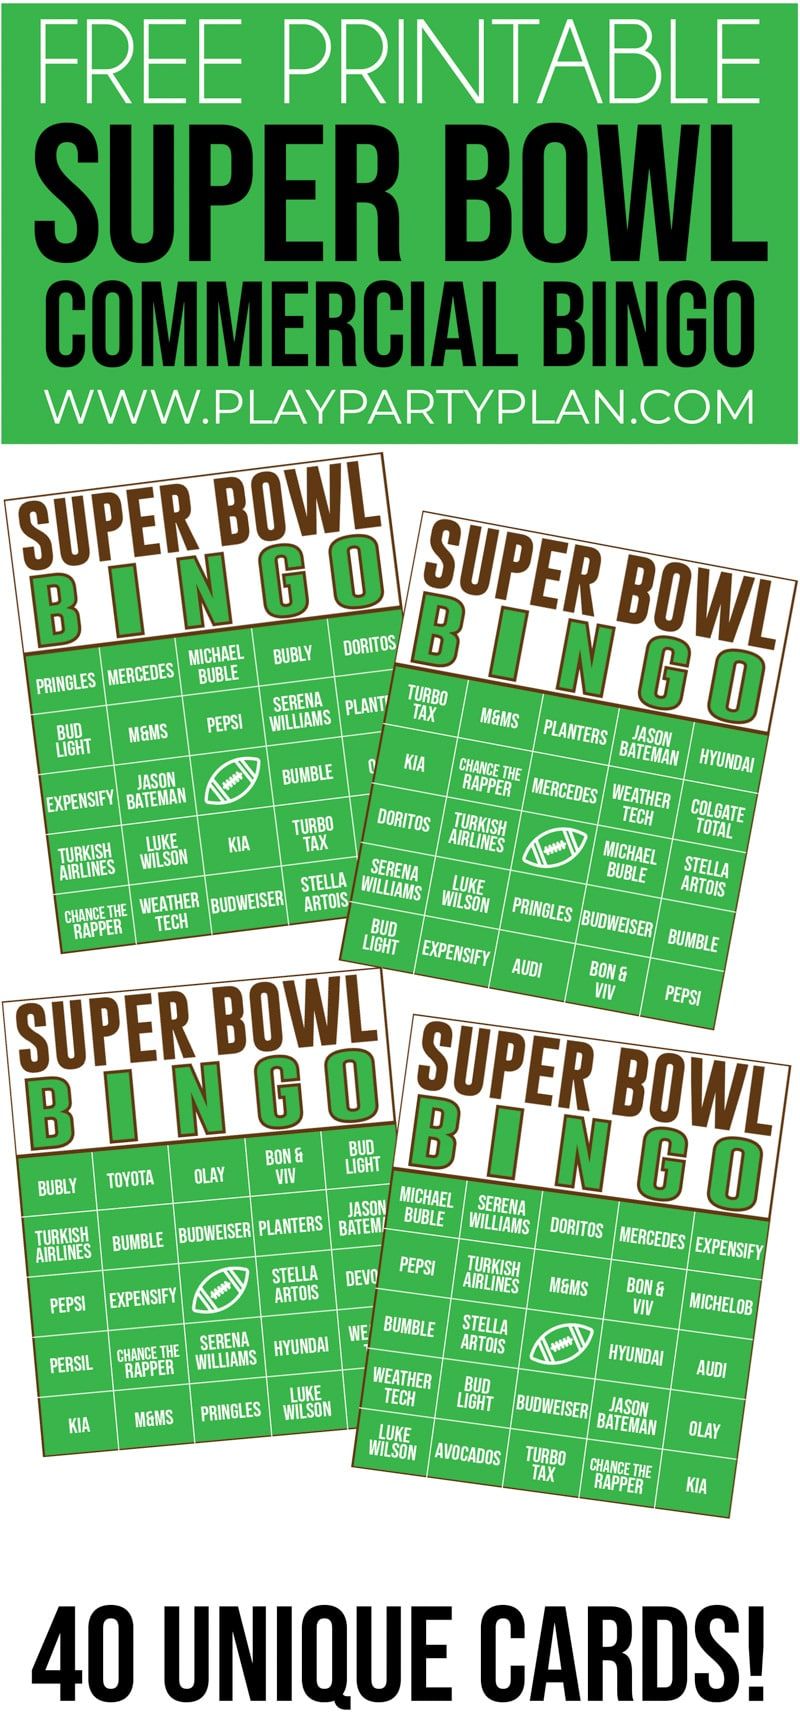 Toto komerční bingo Super Bowl je jednou z nejlepších společenských her Super Bowl všech dob! Ideální pro děti i dospělé!